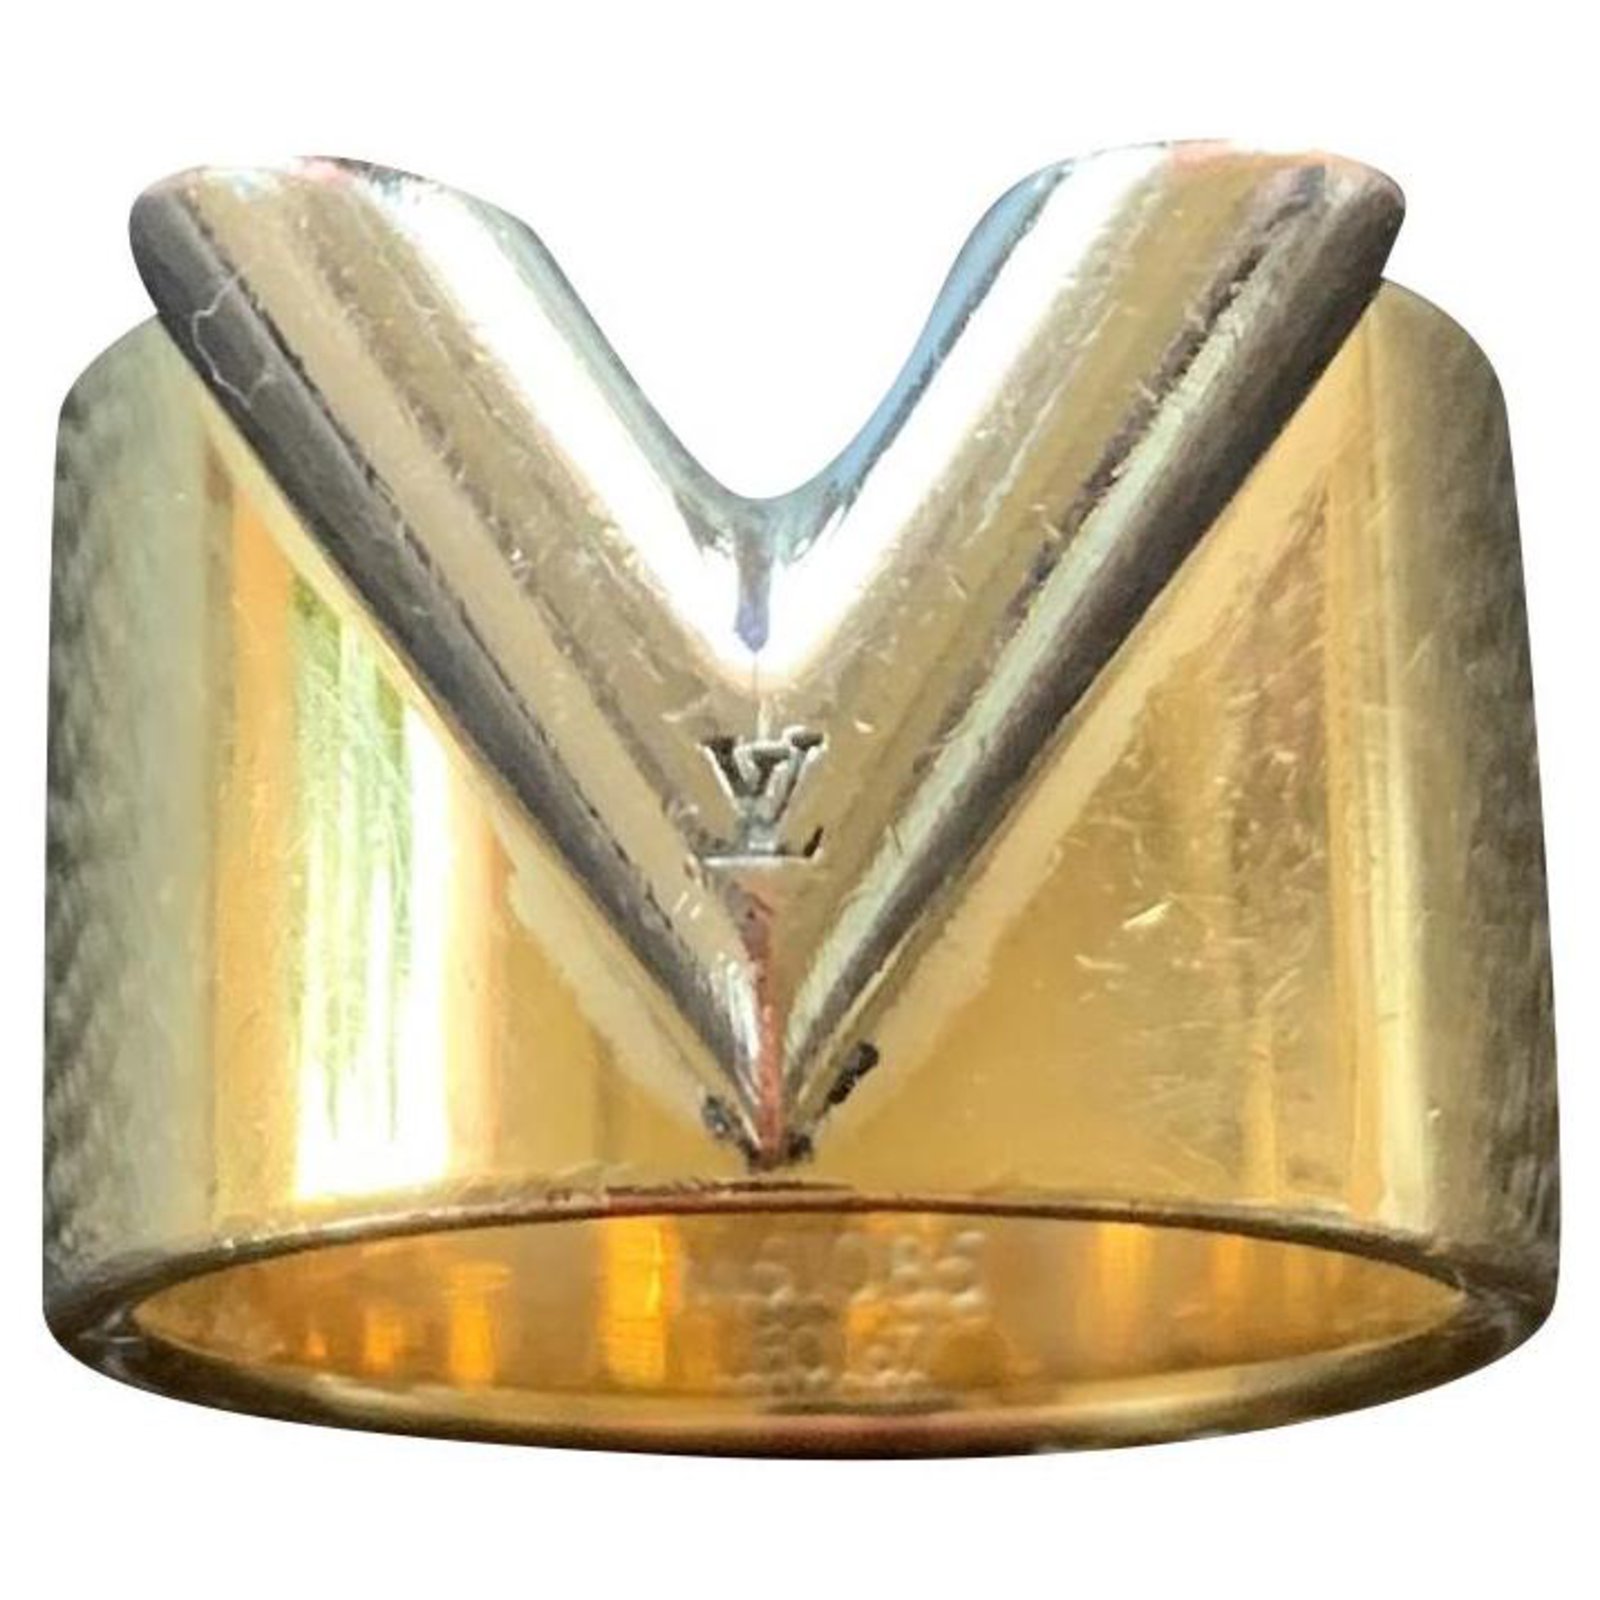 LOUIS VUITTON 'Essential V' Cuff Bracelet in Golden Finish Brass